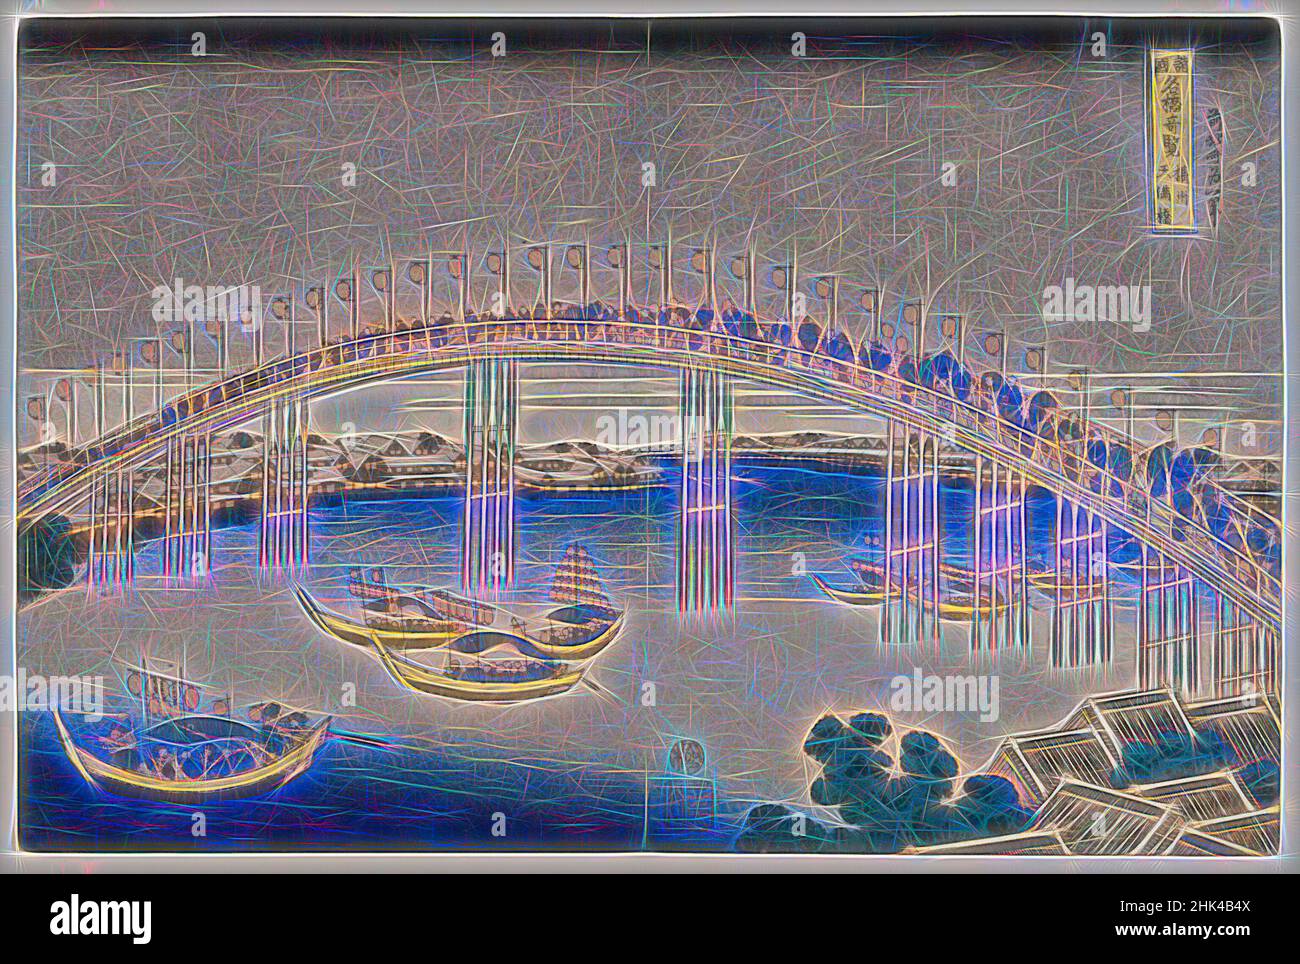 Ispirato dal ponte Tenman nella provincia di Settsu, dalla serie notevoli vedute dei ponti in vari, dalla serie: 'Viste dei ponti di varie Province', Katsushika Hokusai, giapponese, 1760-1849, stampa legno a colori su carta, Giappone, ca. 1834, periodo Edo, 9 13/16 x 14 7/8 pollici, 25 x 37,8, reinventato da Artotop. L'arte classica reinventata con un tocco moderno. Design di calda e allegra luminosità e di raggi di luce. La fotografia si ispira al surrealismo e al futurismo, abbracciando l'energia dinamica della tecnologia moderna, del movimento, della velocità e rivoluzionando la cultura Foto Stock